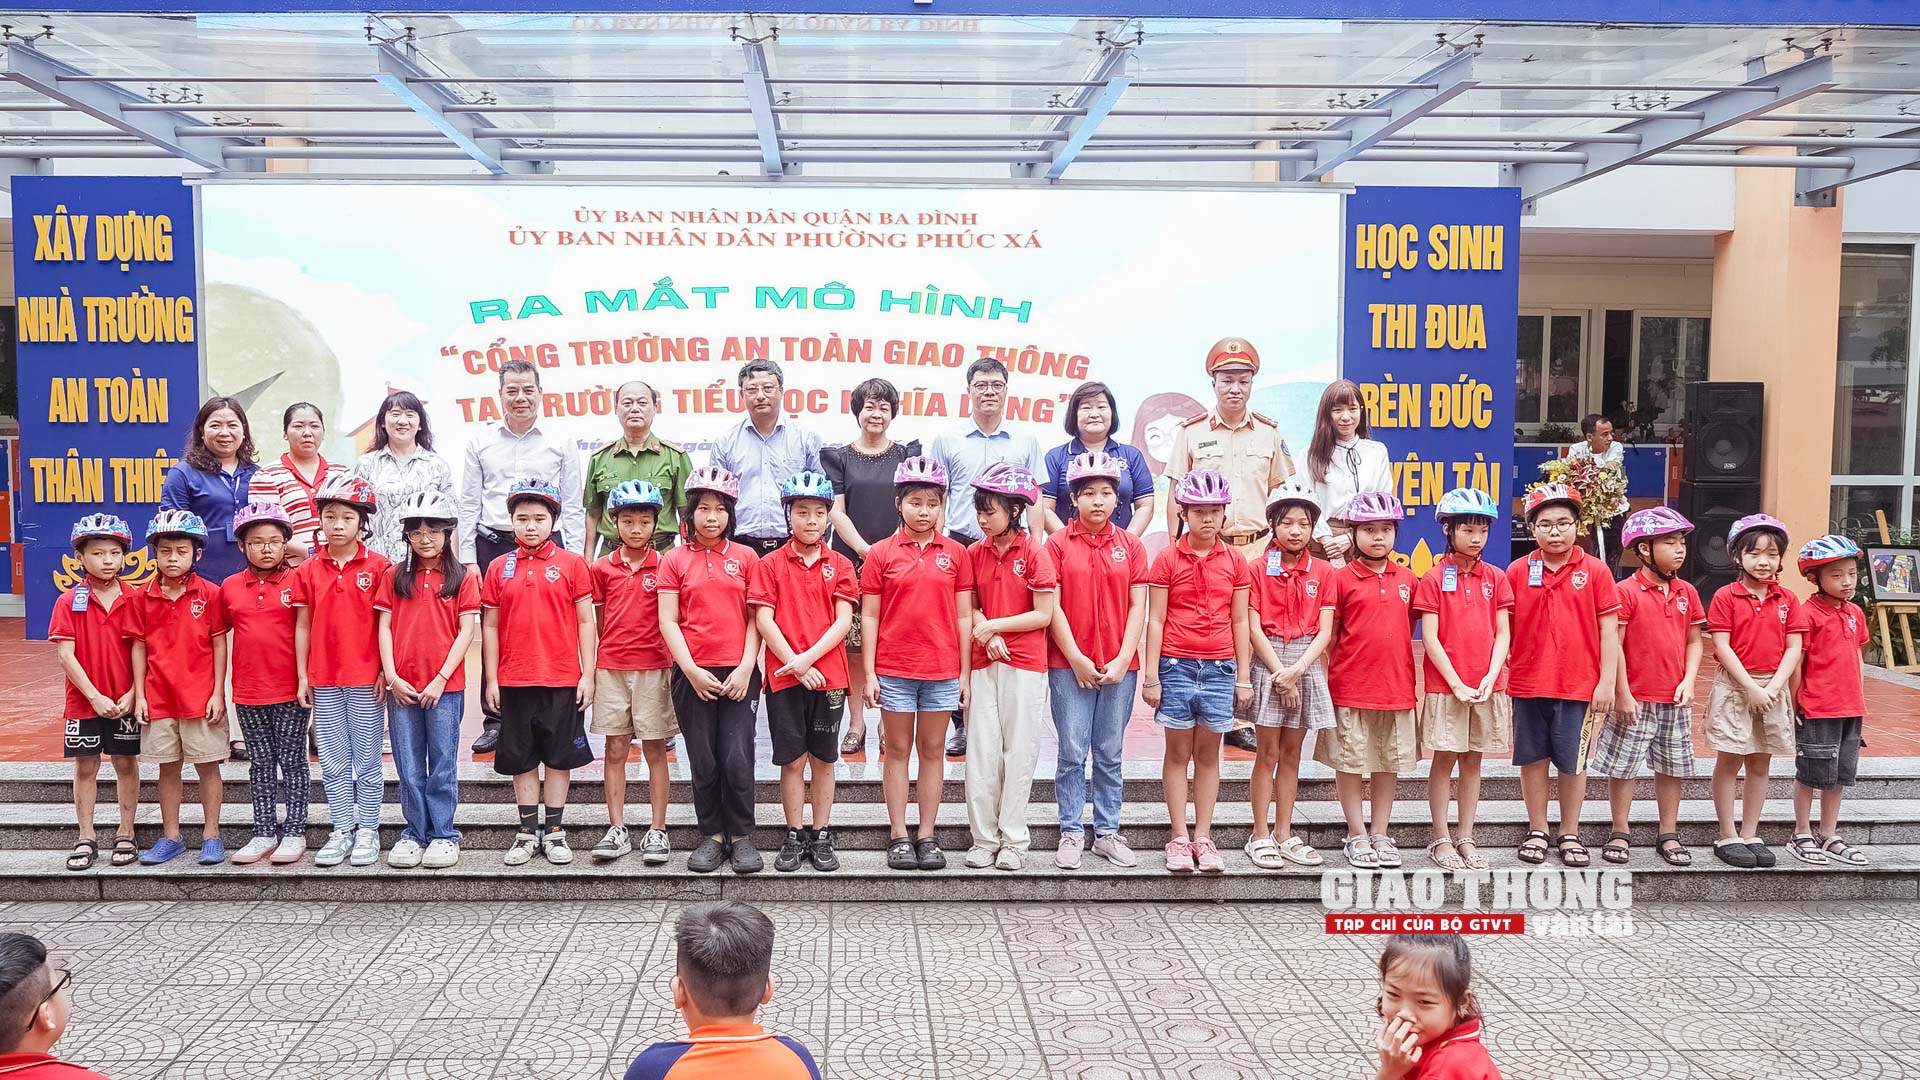 Hà Nội triển khai mô hình "Cổng trường ATGT" tại 9 điểm trường ở quận Ba Đình- Ảnh 5.